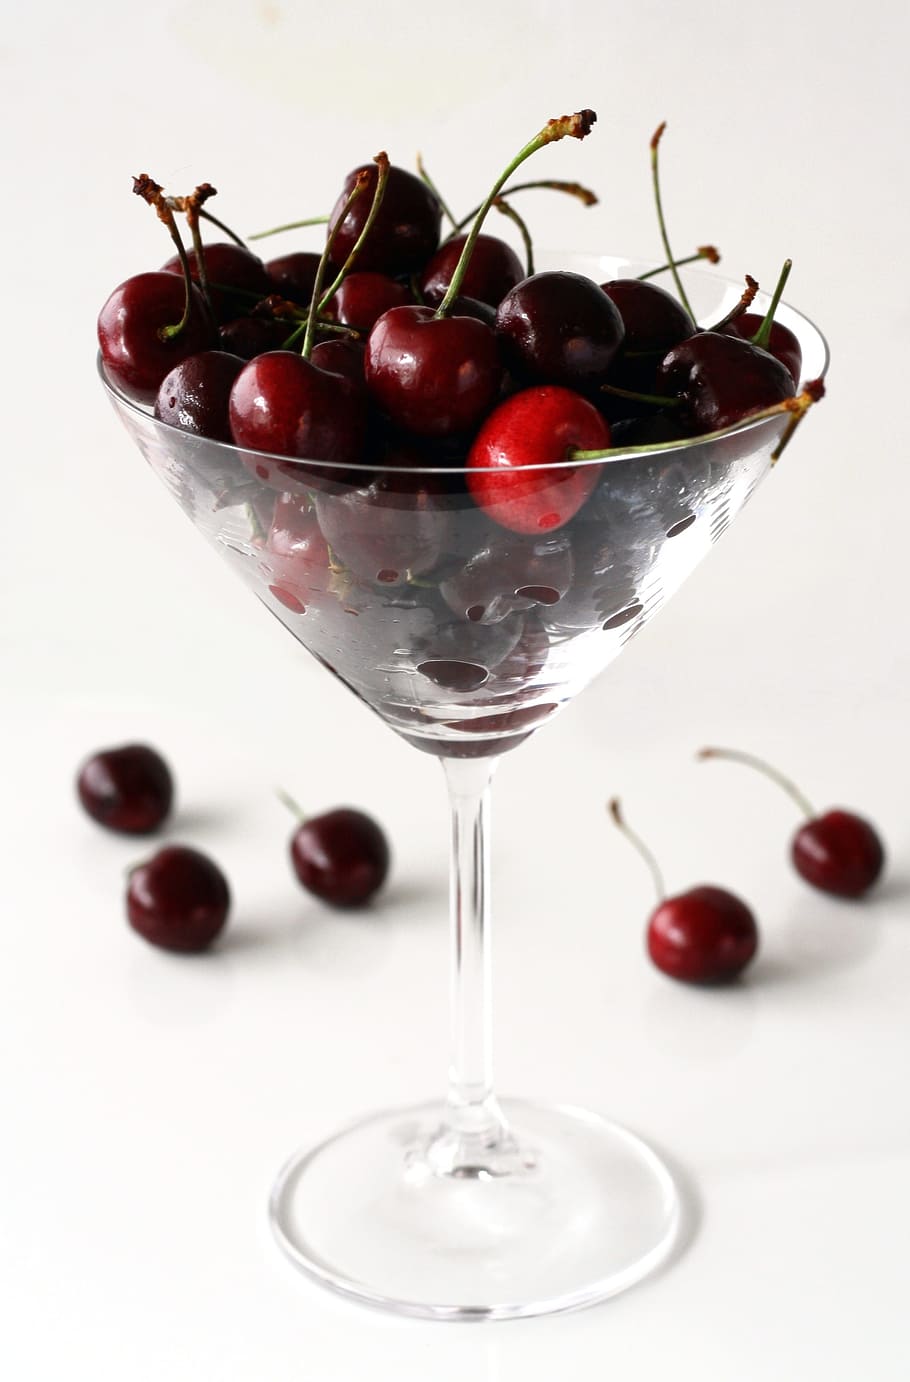 cherries, wine glass, cherry, martini glass, red, macro, food, nature, healthy, juicy